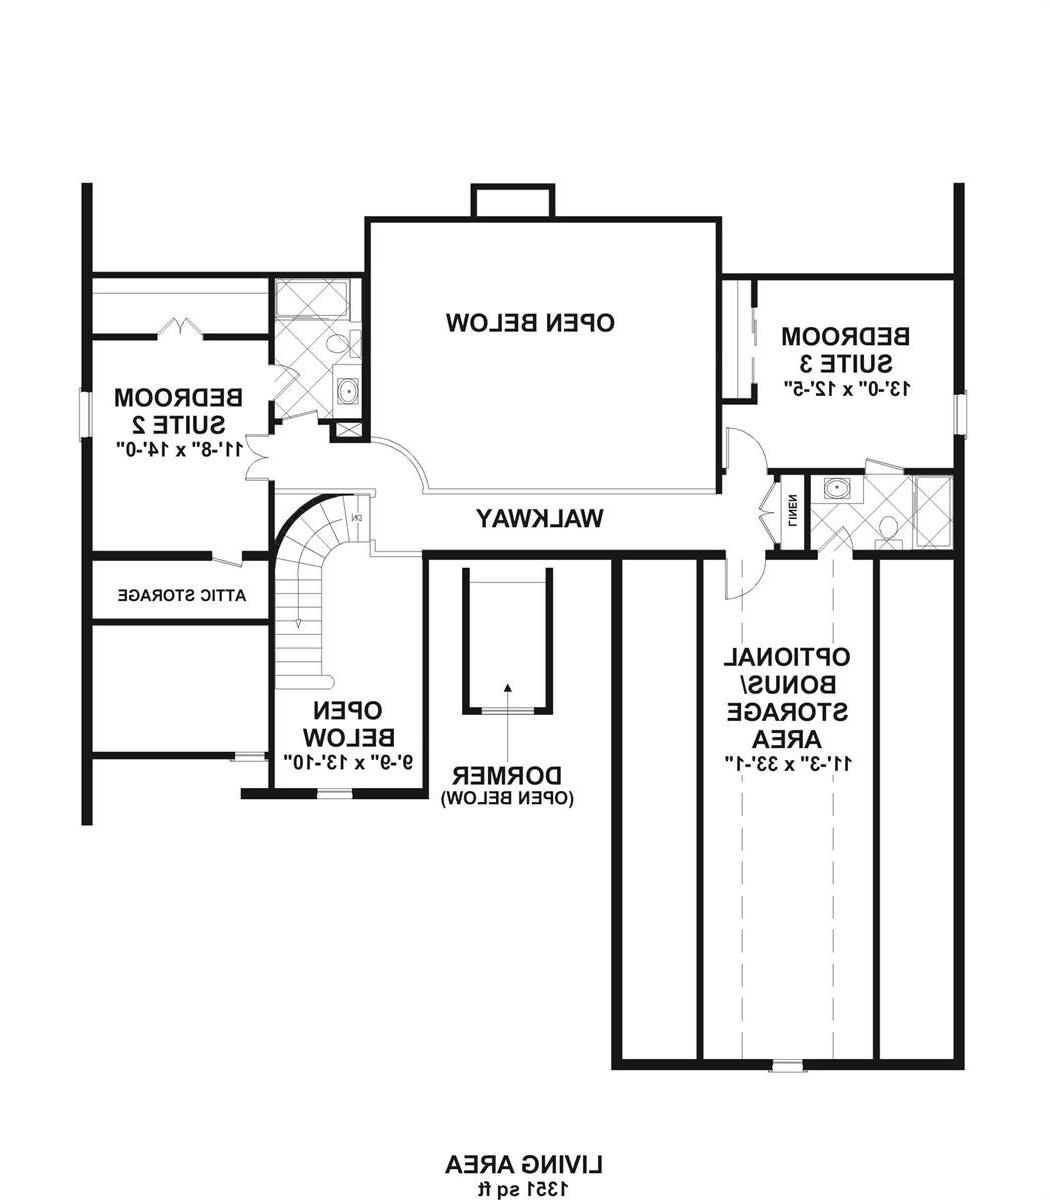 2nd Floor image of Meridian Bay House Plan